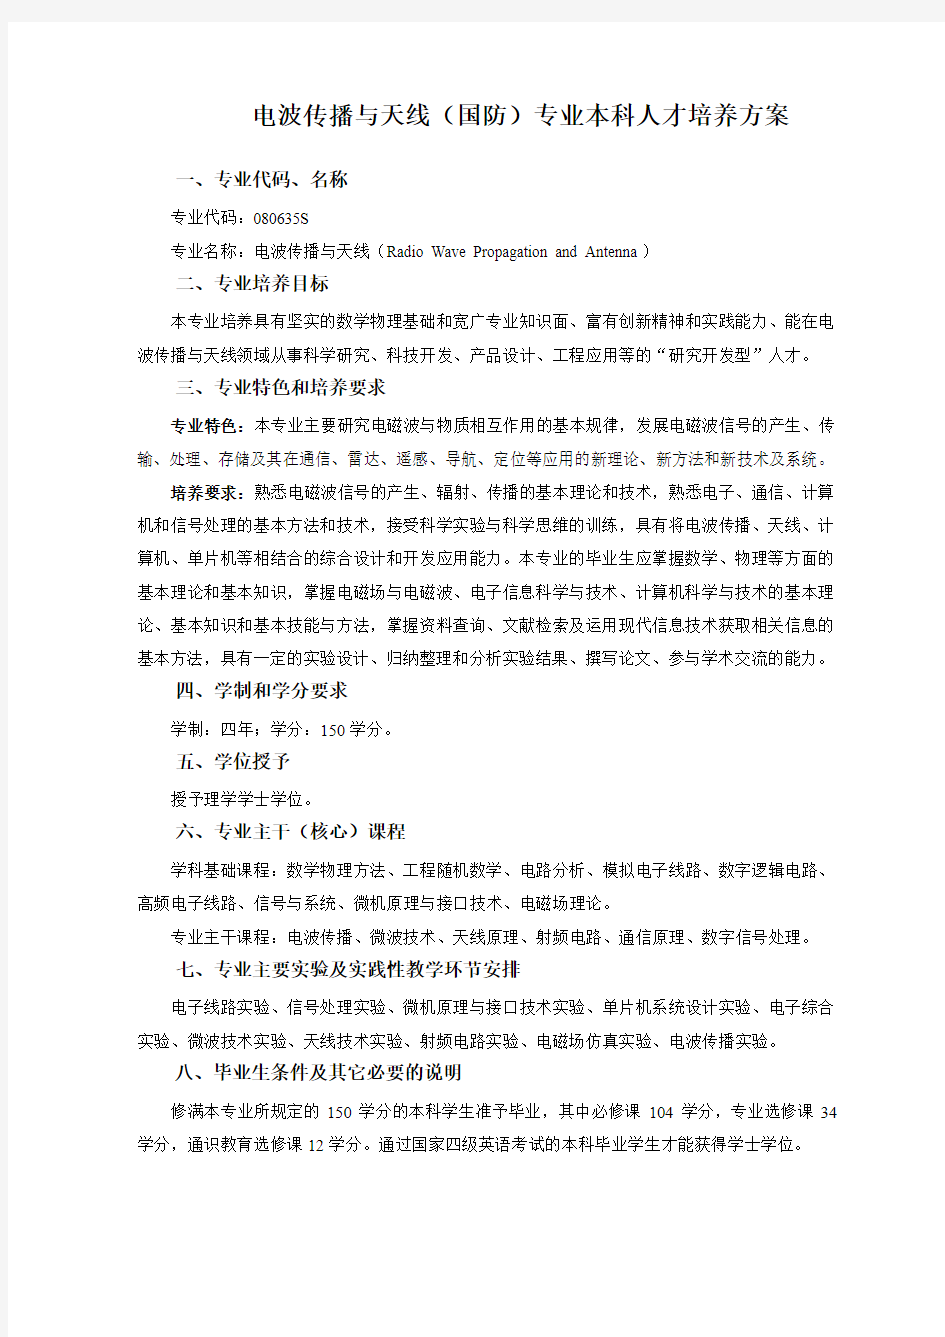 武汉大学电子信息学院2010级本科培养方案(中文汇总版定稿)